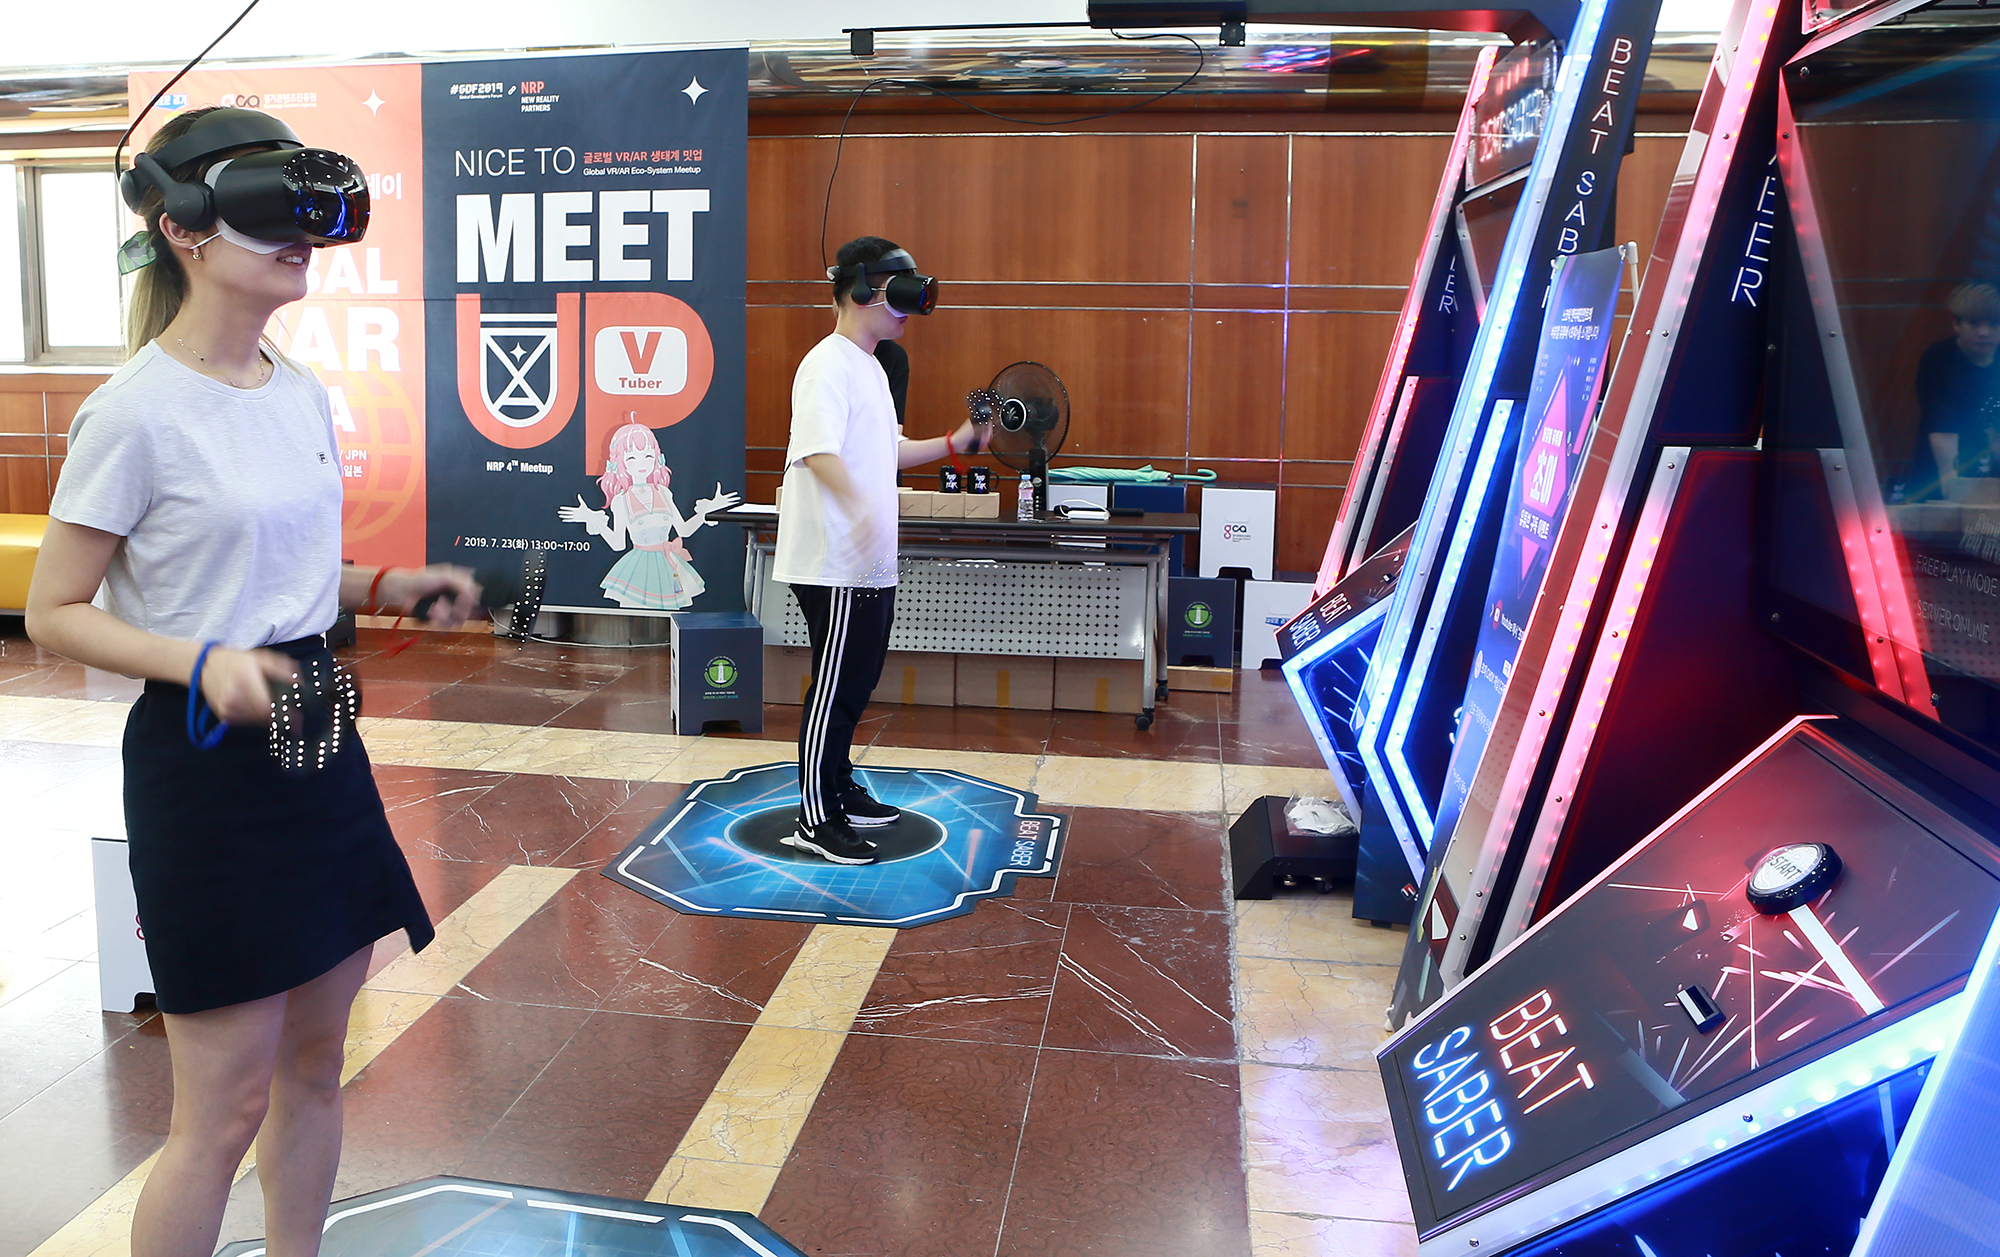 이번 행사에는 VR·AR 저변 확대를 위해 국내외에서 최고 인기를 누리고 있는 VR 리듬 게임인 ‘비트세이버(Beat Saber)’를 직접 즐길 수 있는 비트세이버 아케이드도 무료 운영했다. 